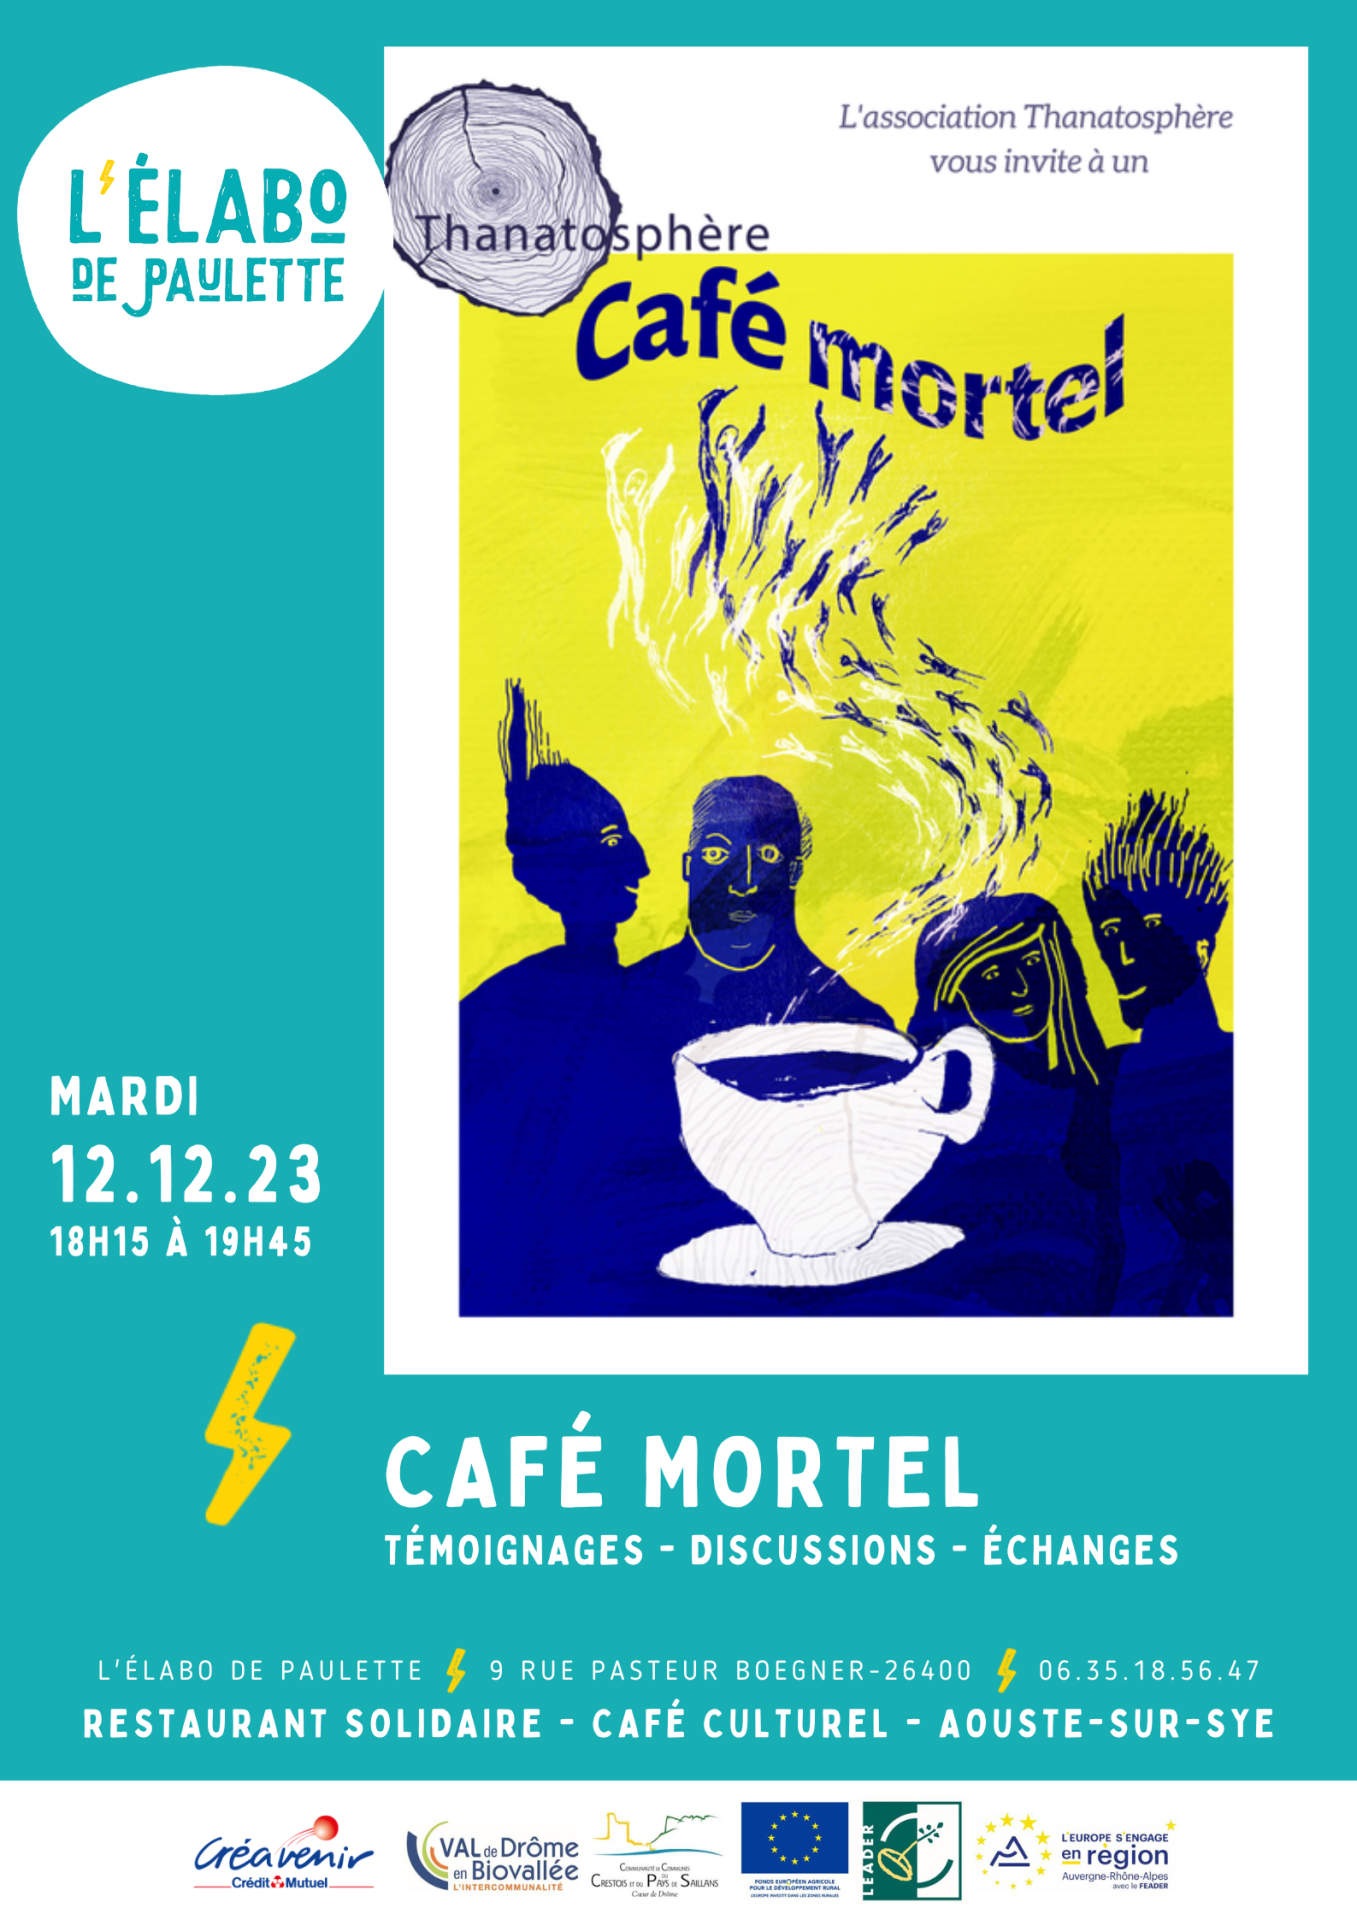 Cafe mortel